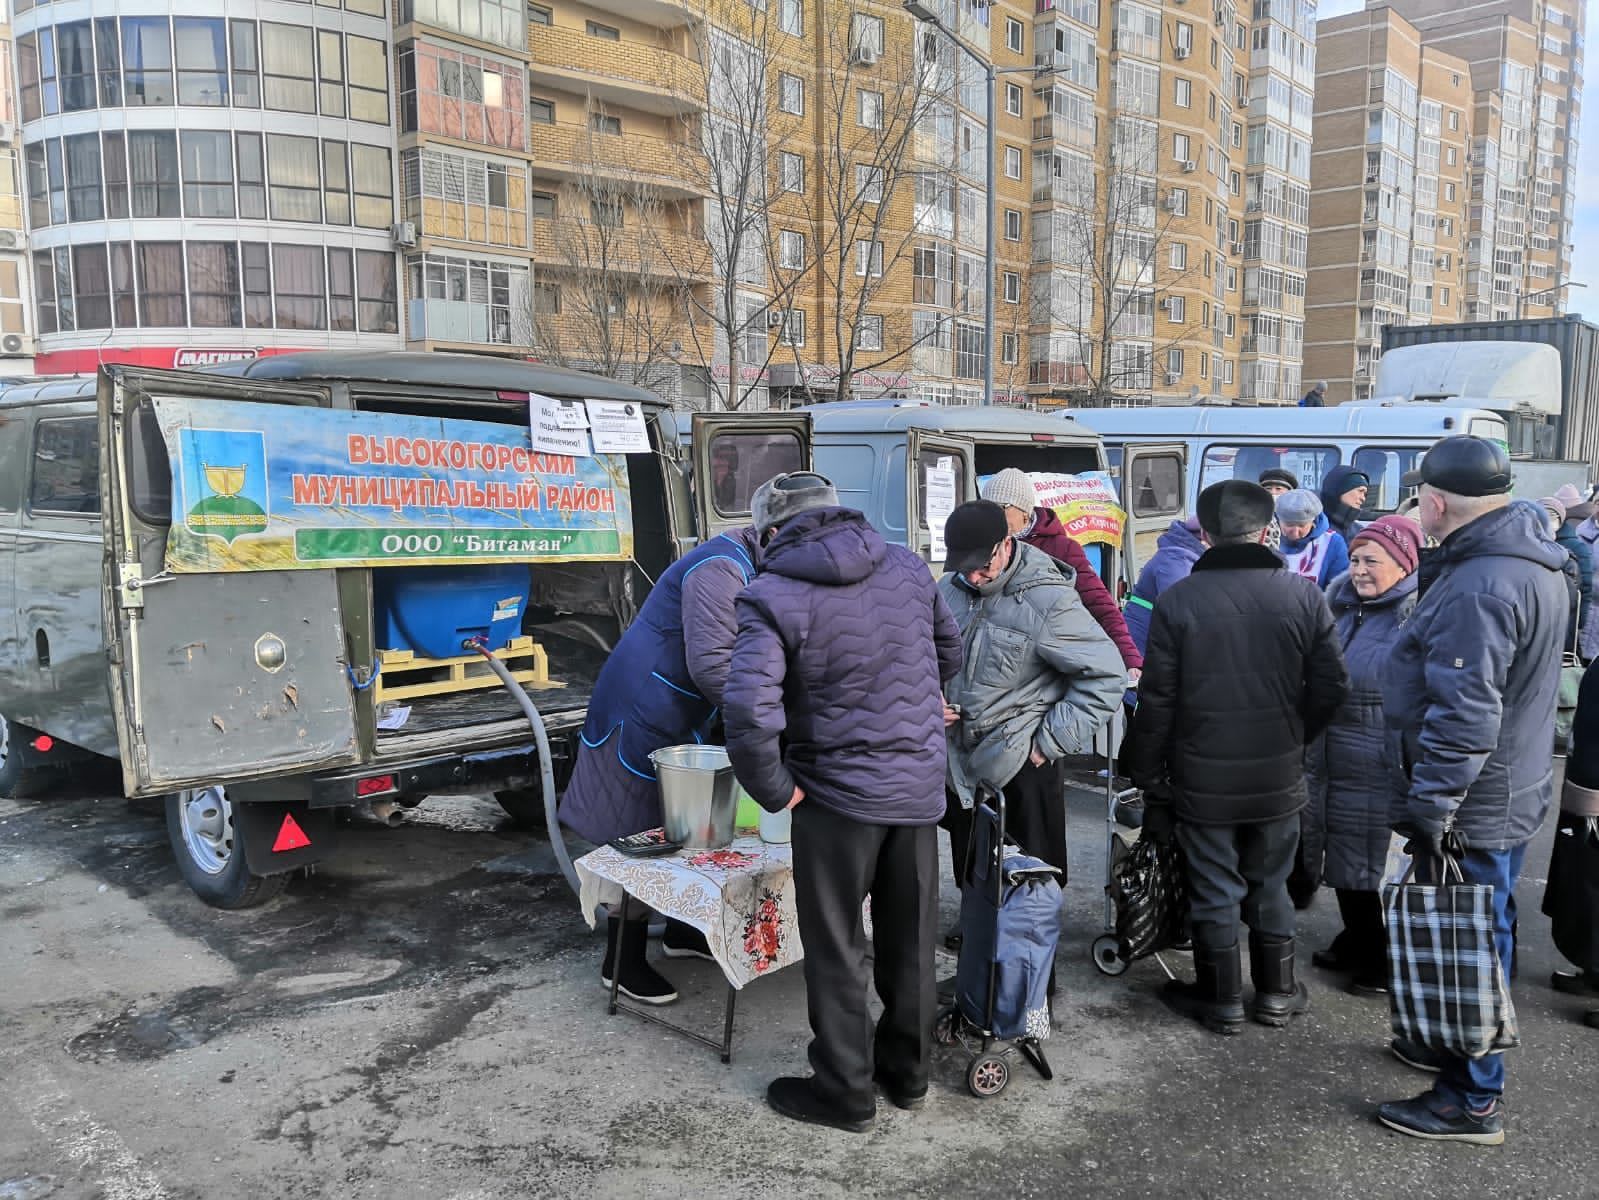 Сегодня в Казани прошла сельхозярмарка, где можно было приобрести продукты Высокогорского производства